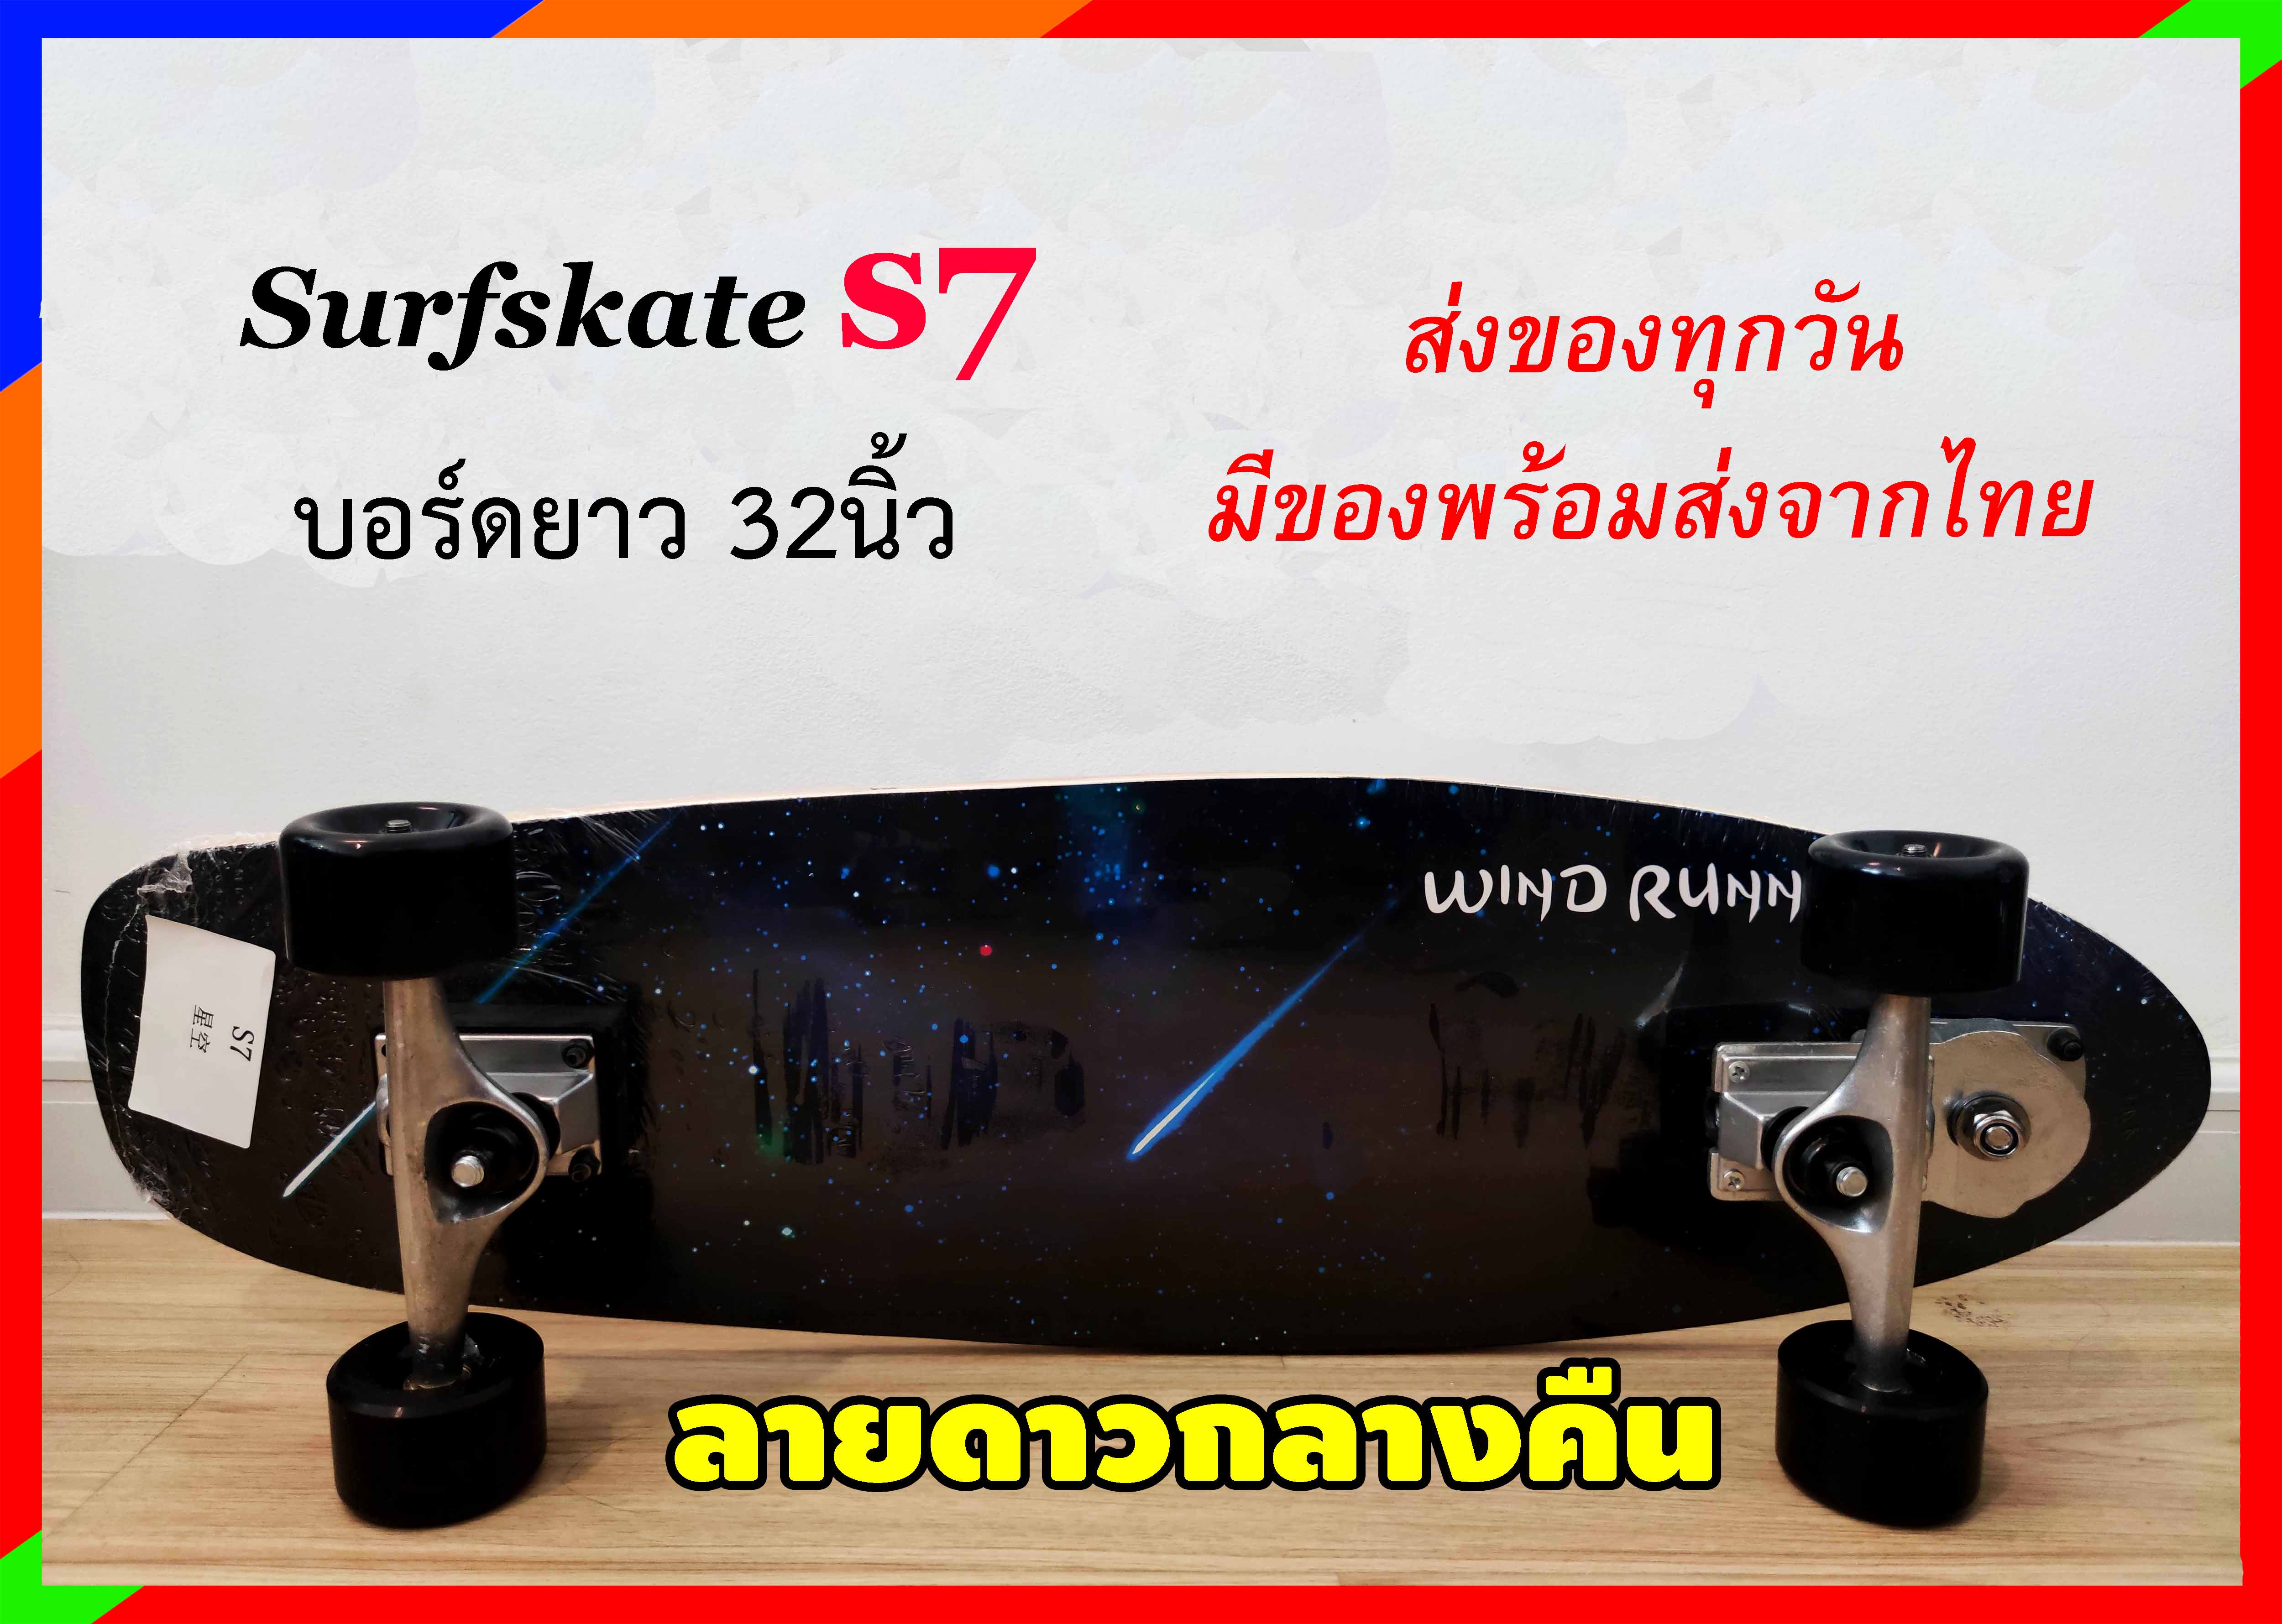 เซิร์ฟสเก็ต surfskate S7 ขนาด32นิ้ว เซิร์ฟสเก็ตรุ่นใหม่ พร้อมส่งจากไทย seething surfskate toy108 เซิร์ฟสเก็ต สเก็ตบอร์ด skateboard